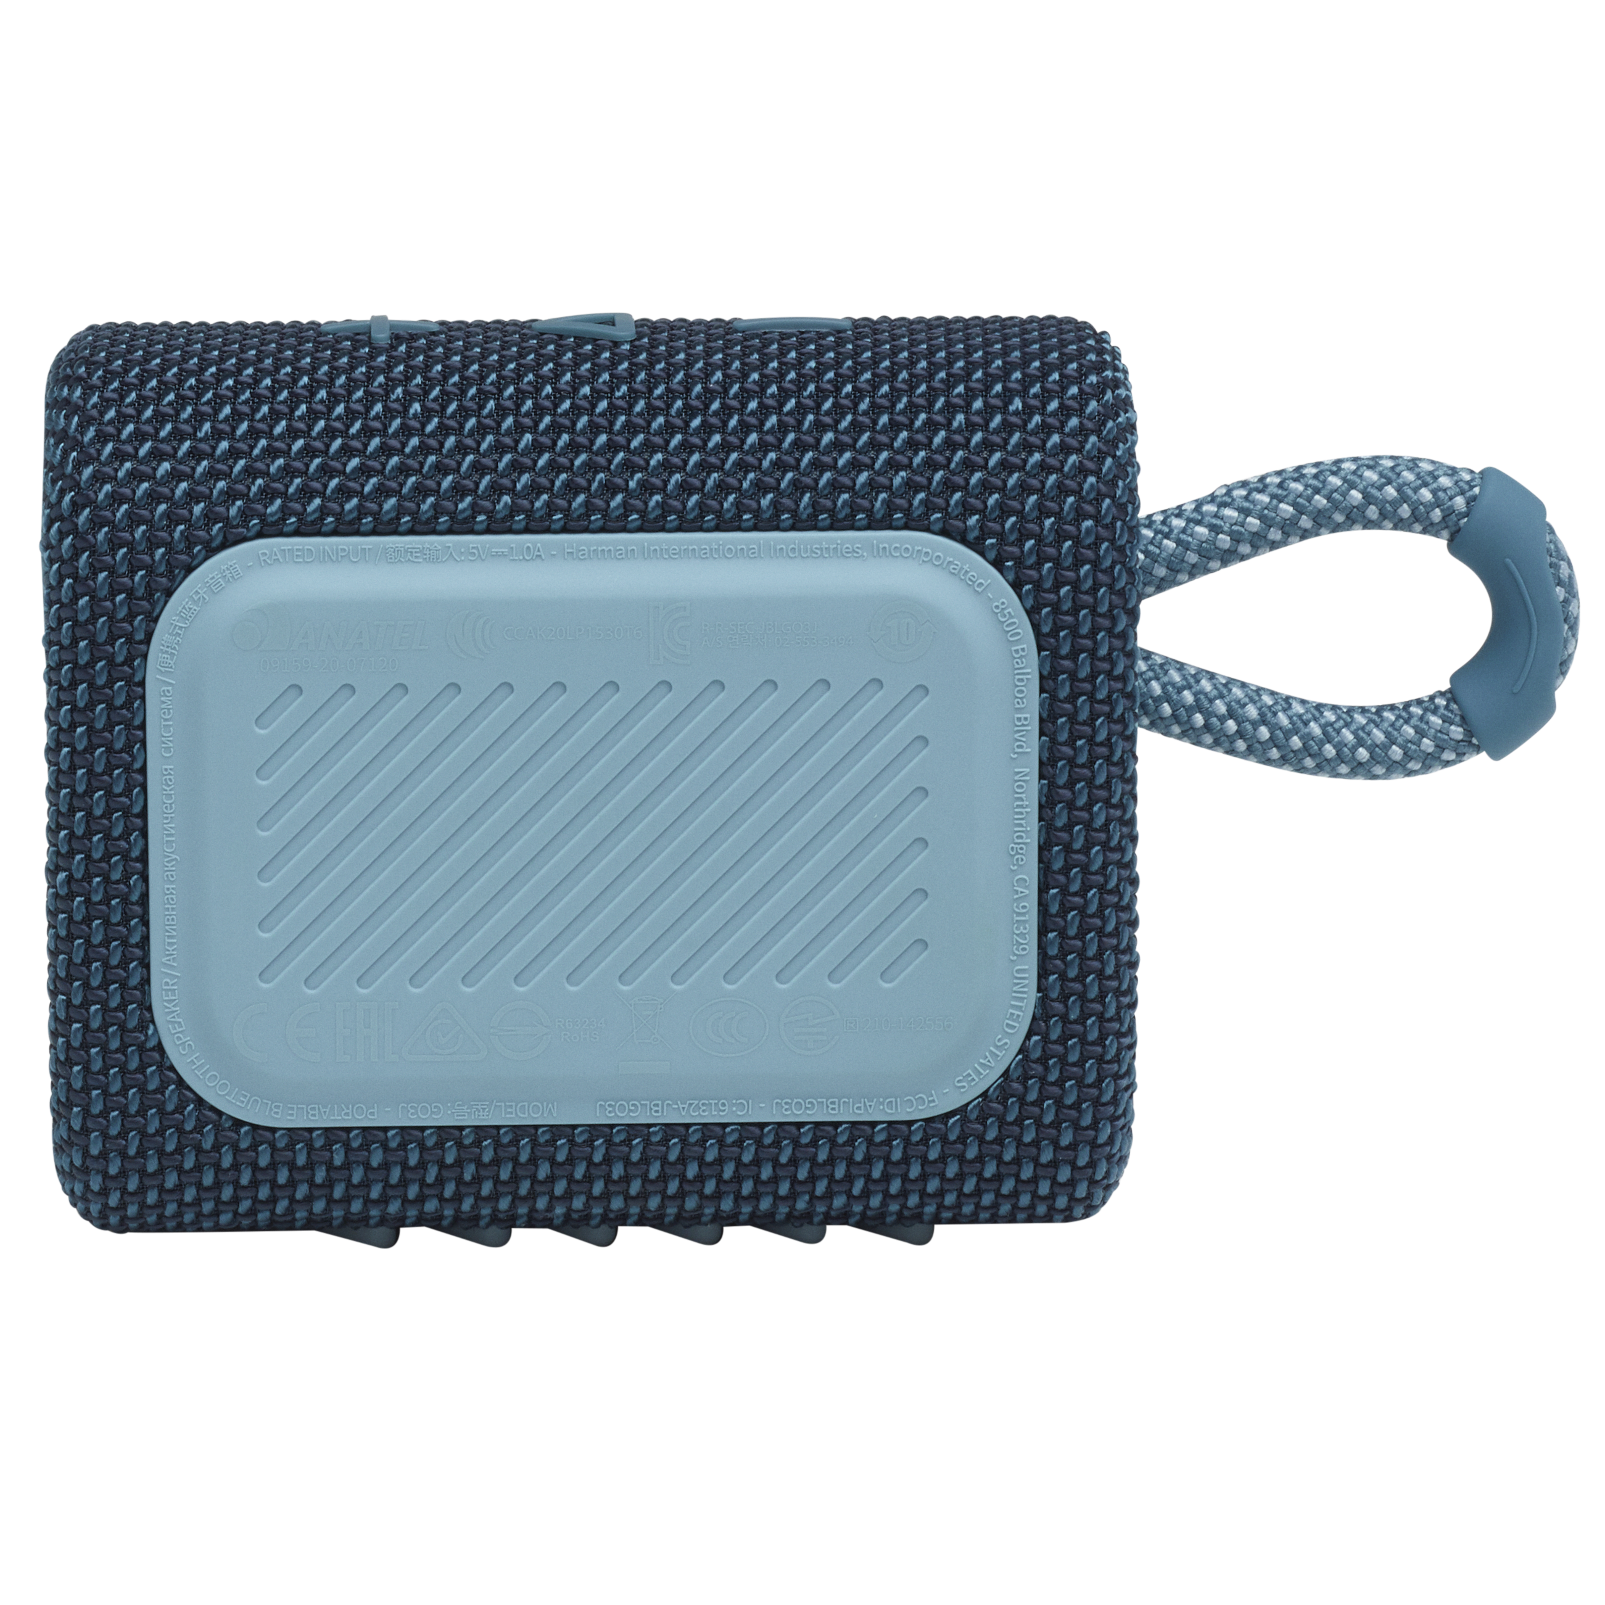 JBL Go 3 - Blue - Portable Waterproof Speaker - Back